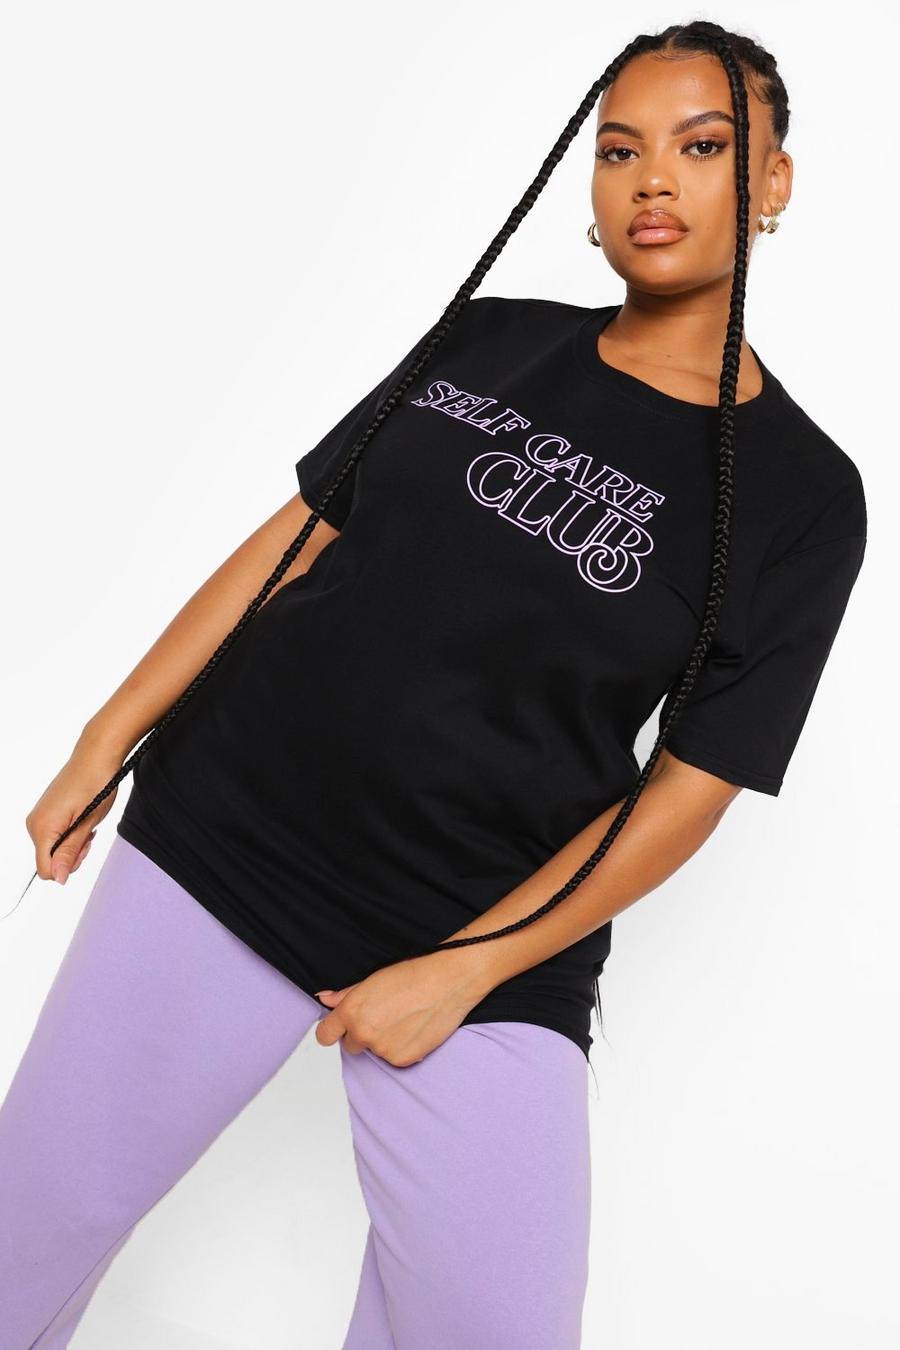 Black Plus Self Care Club T-shirt